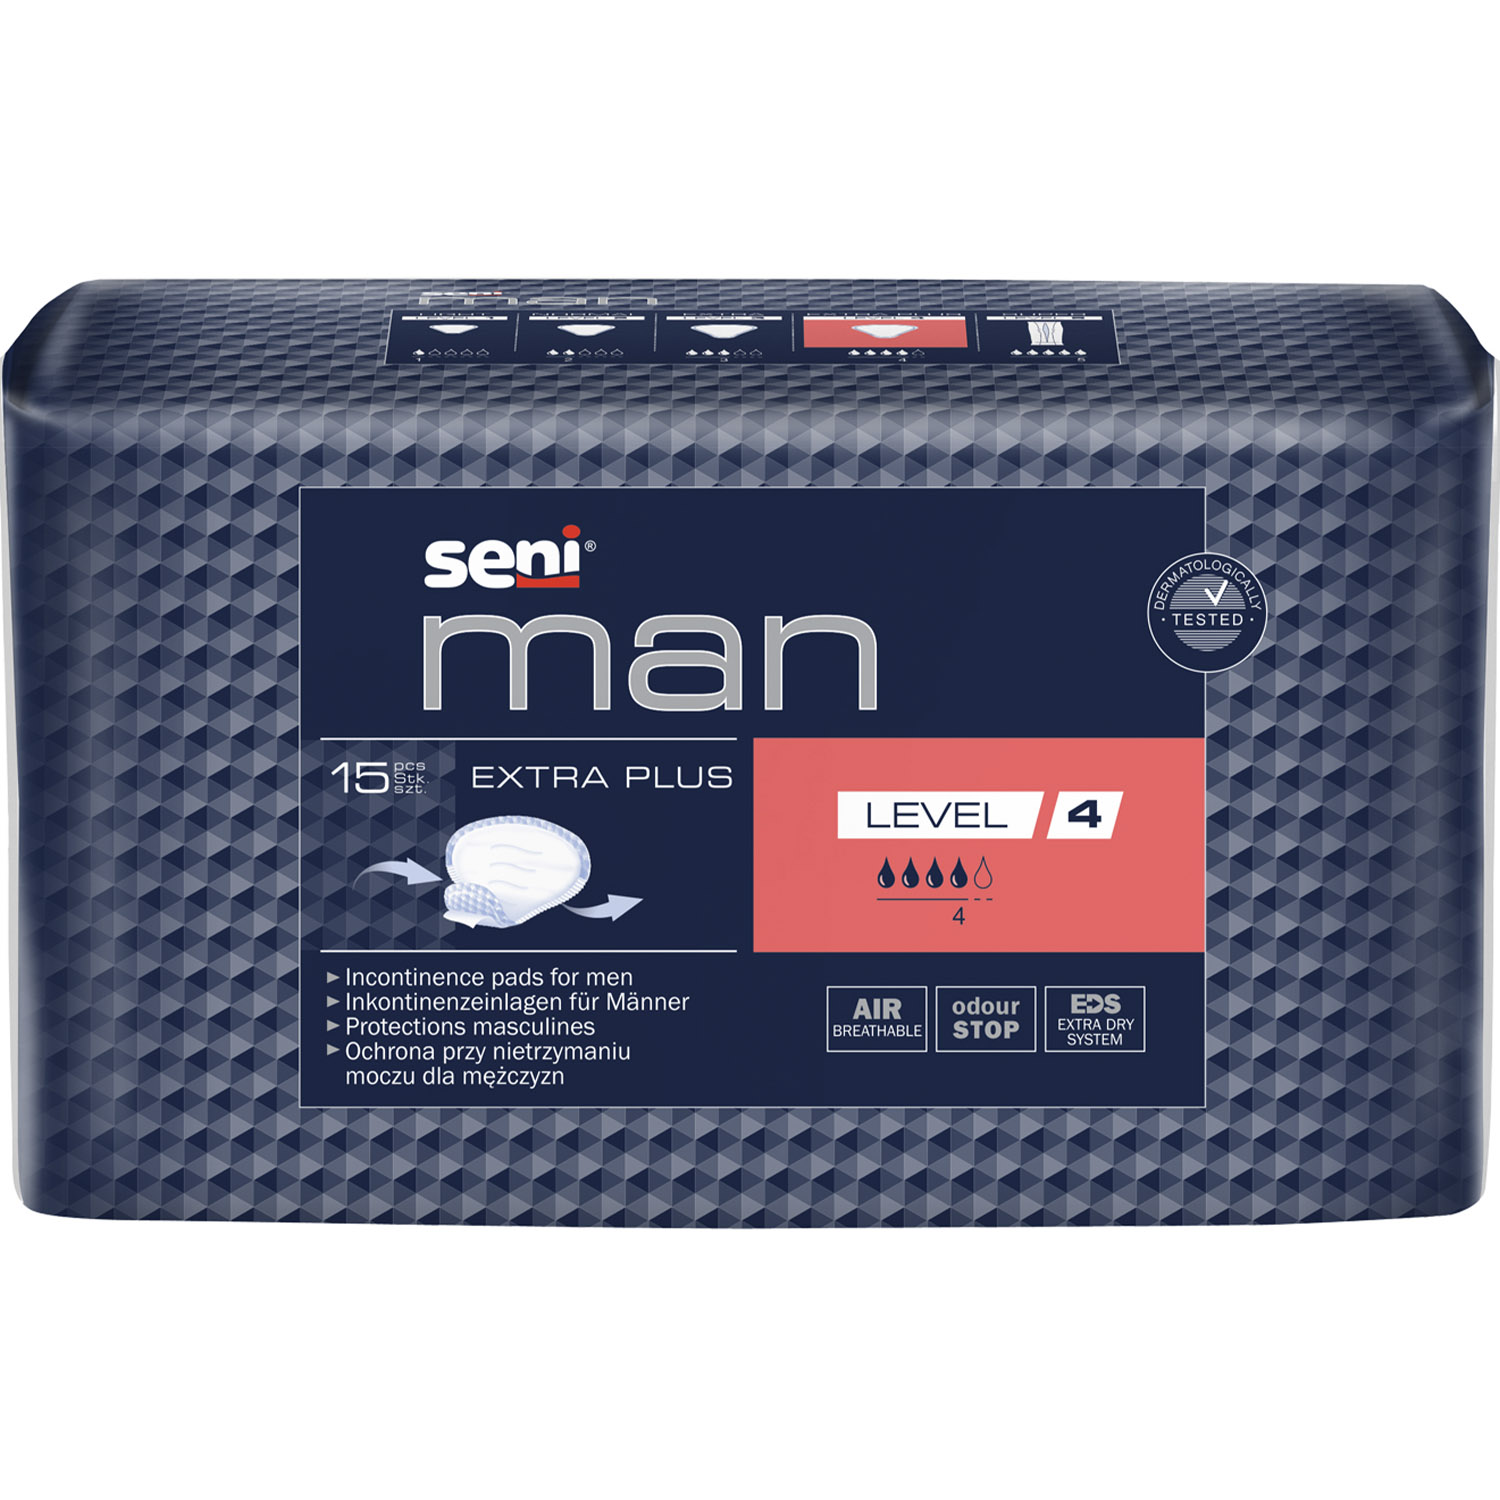 Прокладки урологические Seni Man Extra Plus Level 4 для мужчин 15 шт. - фото 1